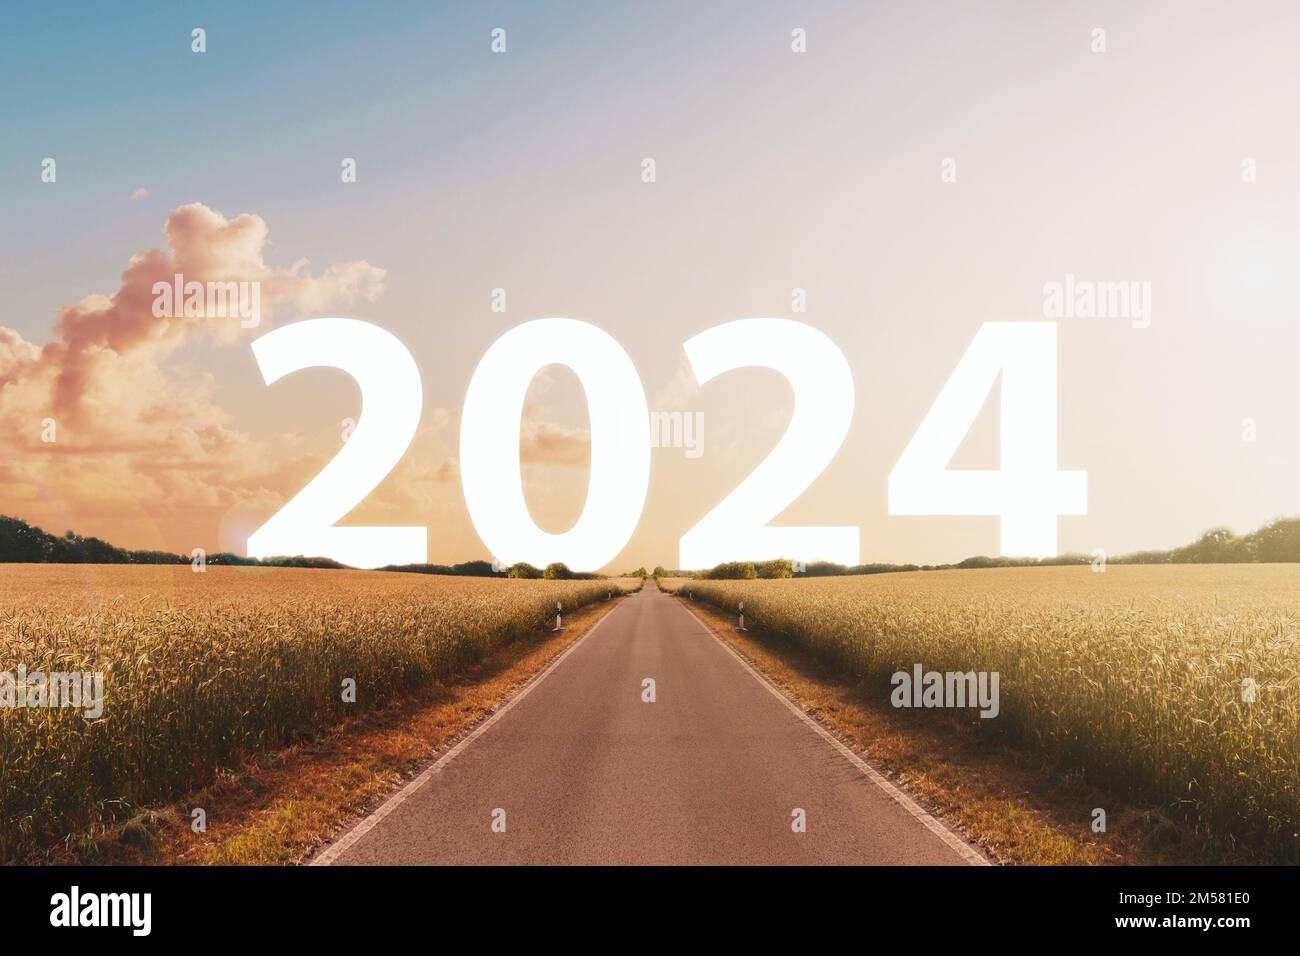 Bonne année 2024 concept - route ou autoroute avec texte Banque D'Images